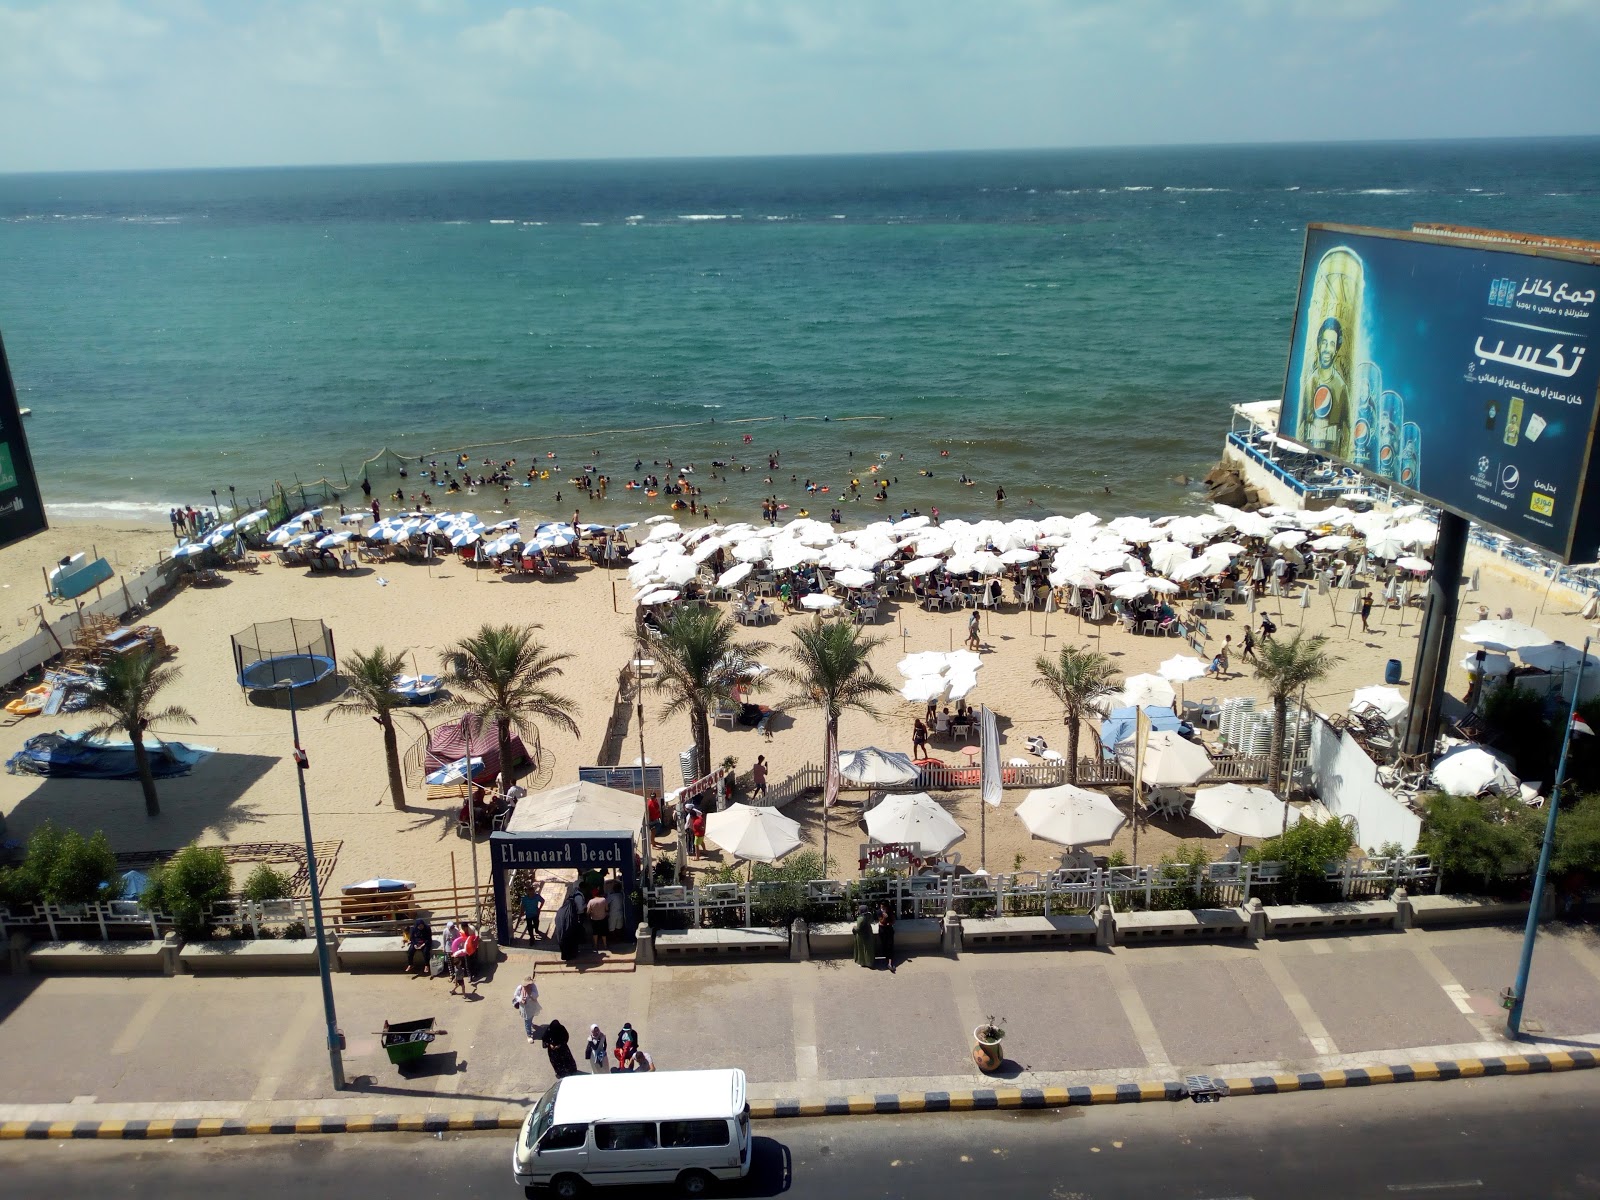 Mandara Beach North'in fotoğrafı kısmen otel alanı